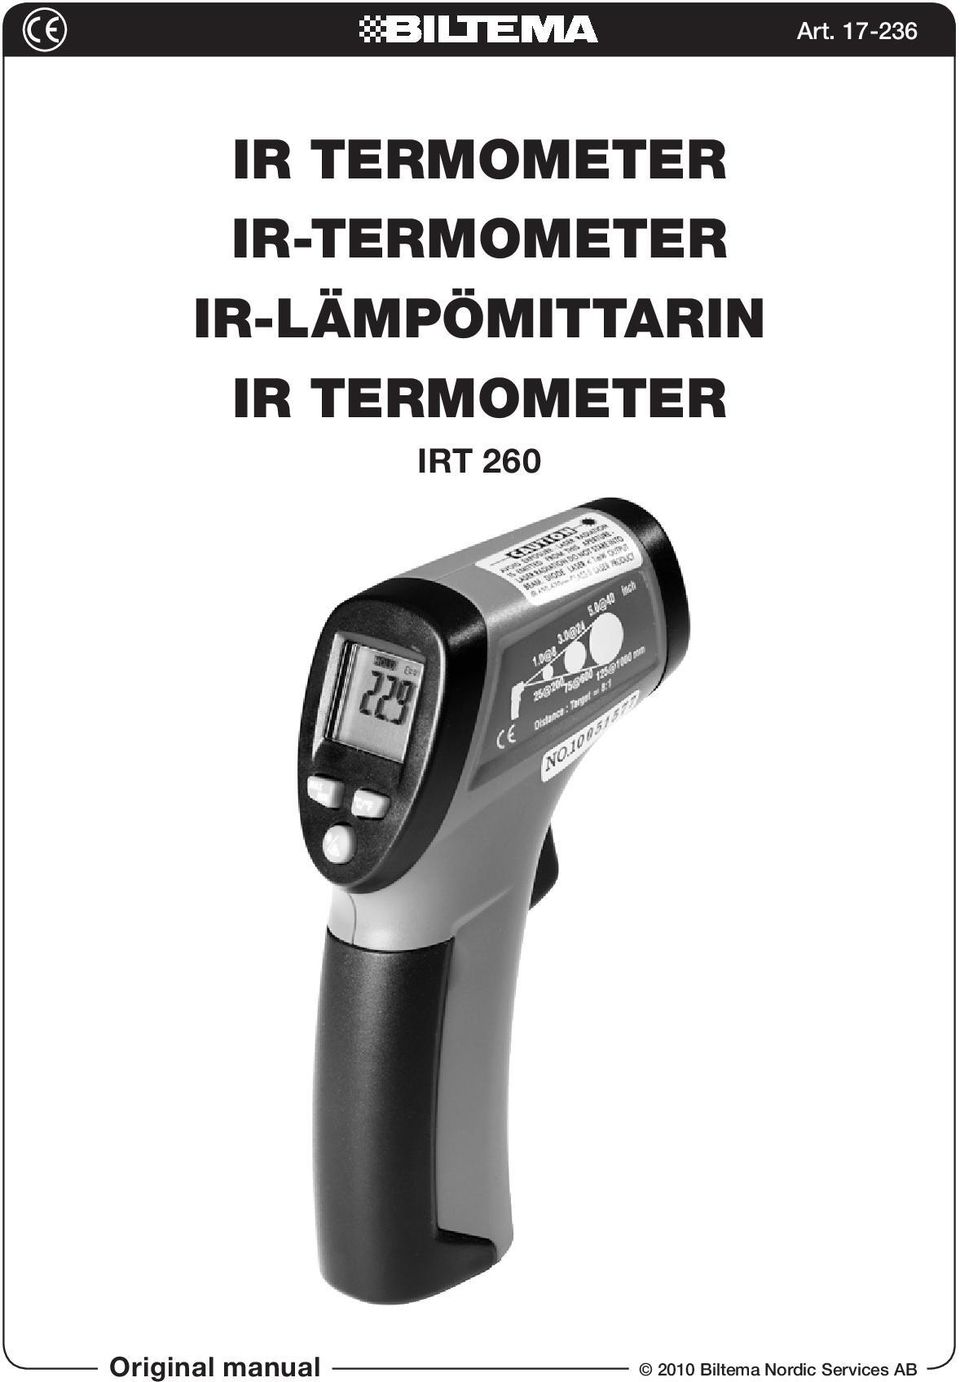 Art IRT 260. Original manual Biltema Nordic Services AB - PDF Free Download